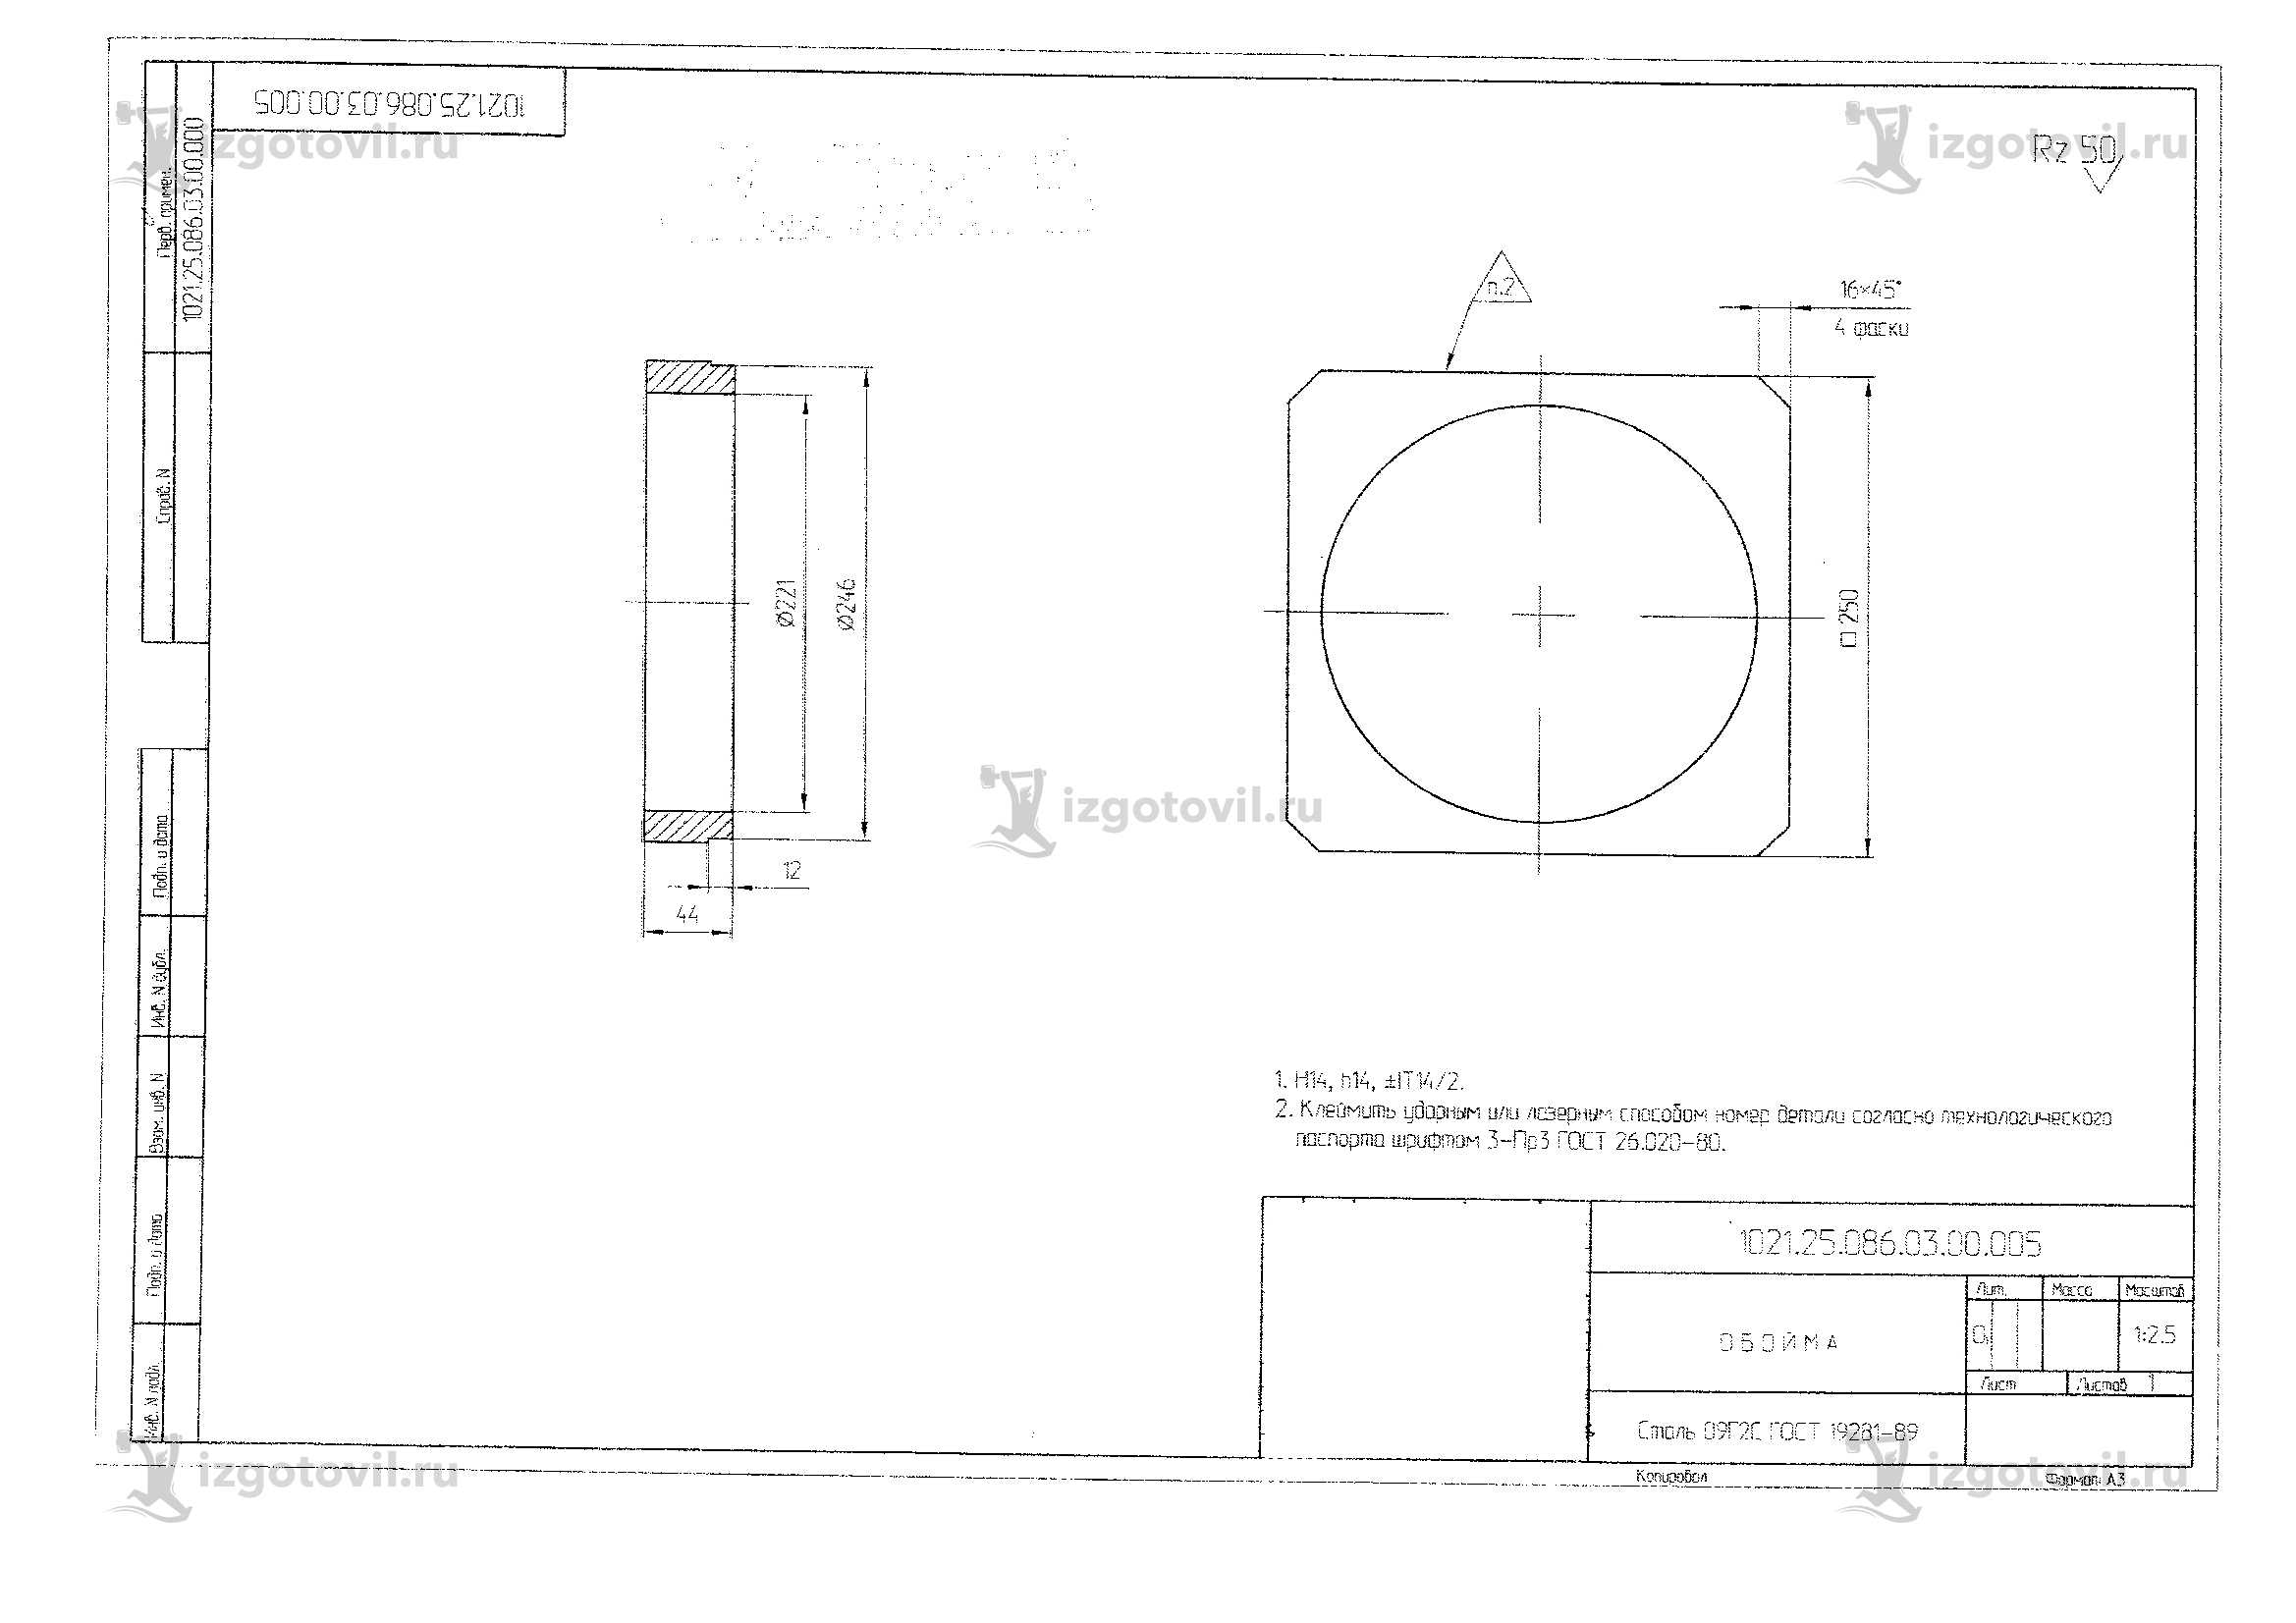 Изготовление деталей по чертежам: корпуса, фланец и блок резьбовой